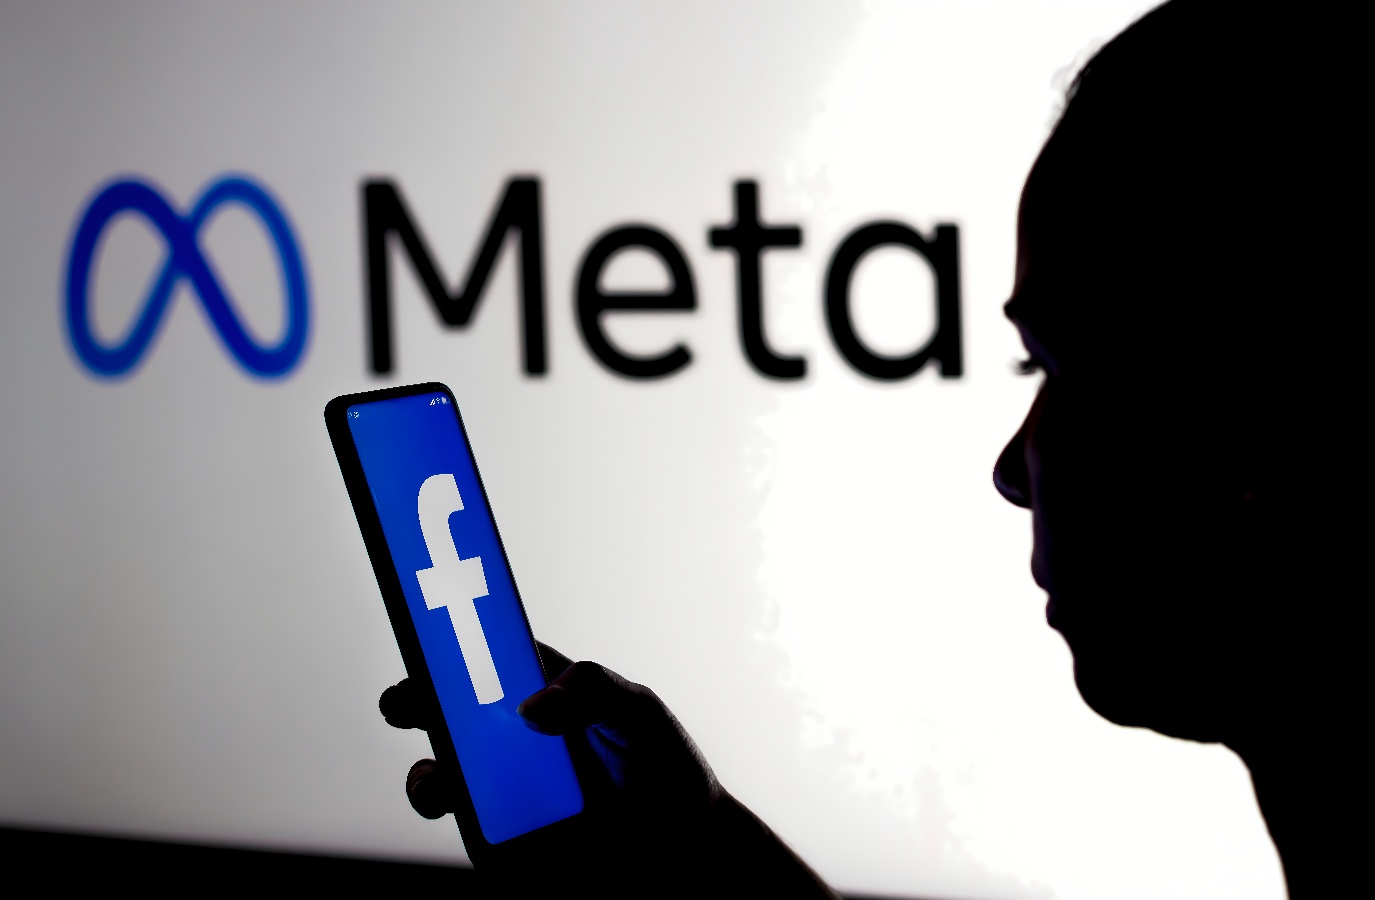 图片展示了一个人的剪影，手持带有Facebook标志的手机，背景是发光的“Meta”字样的标志。